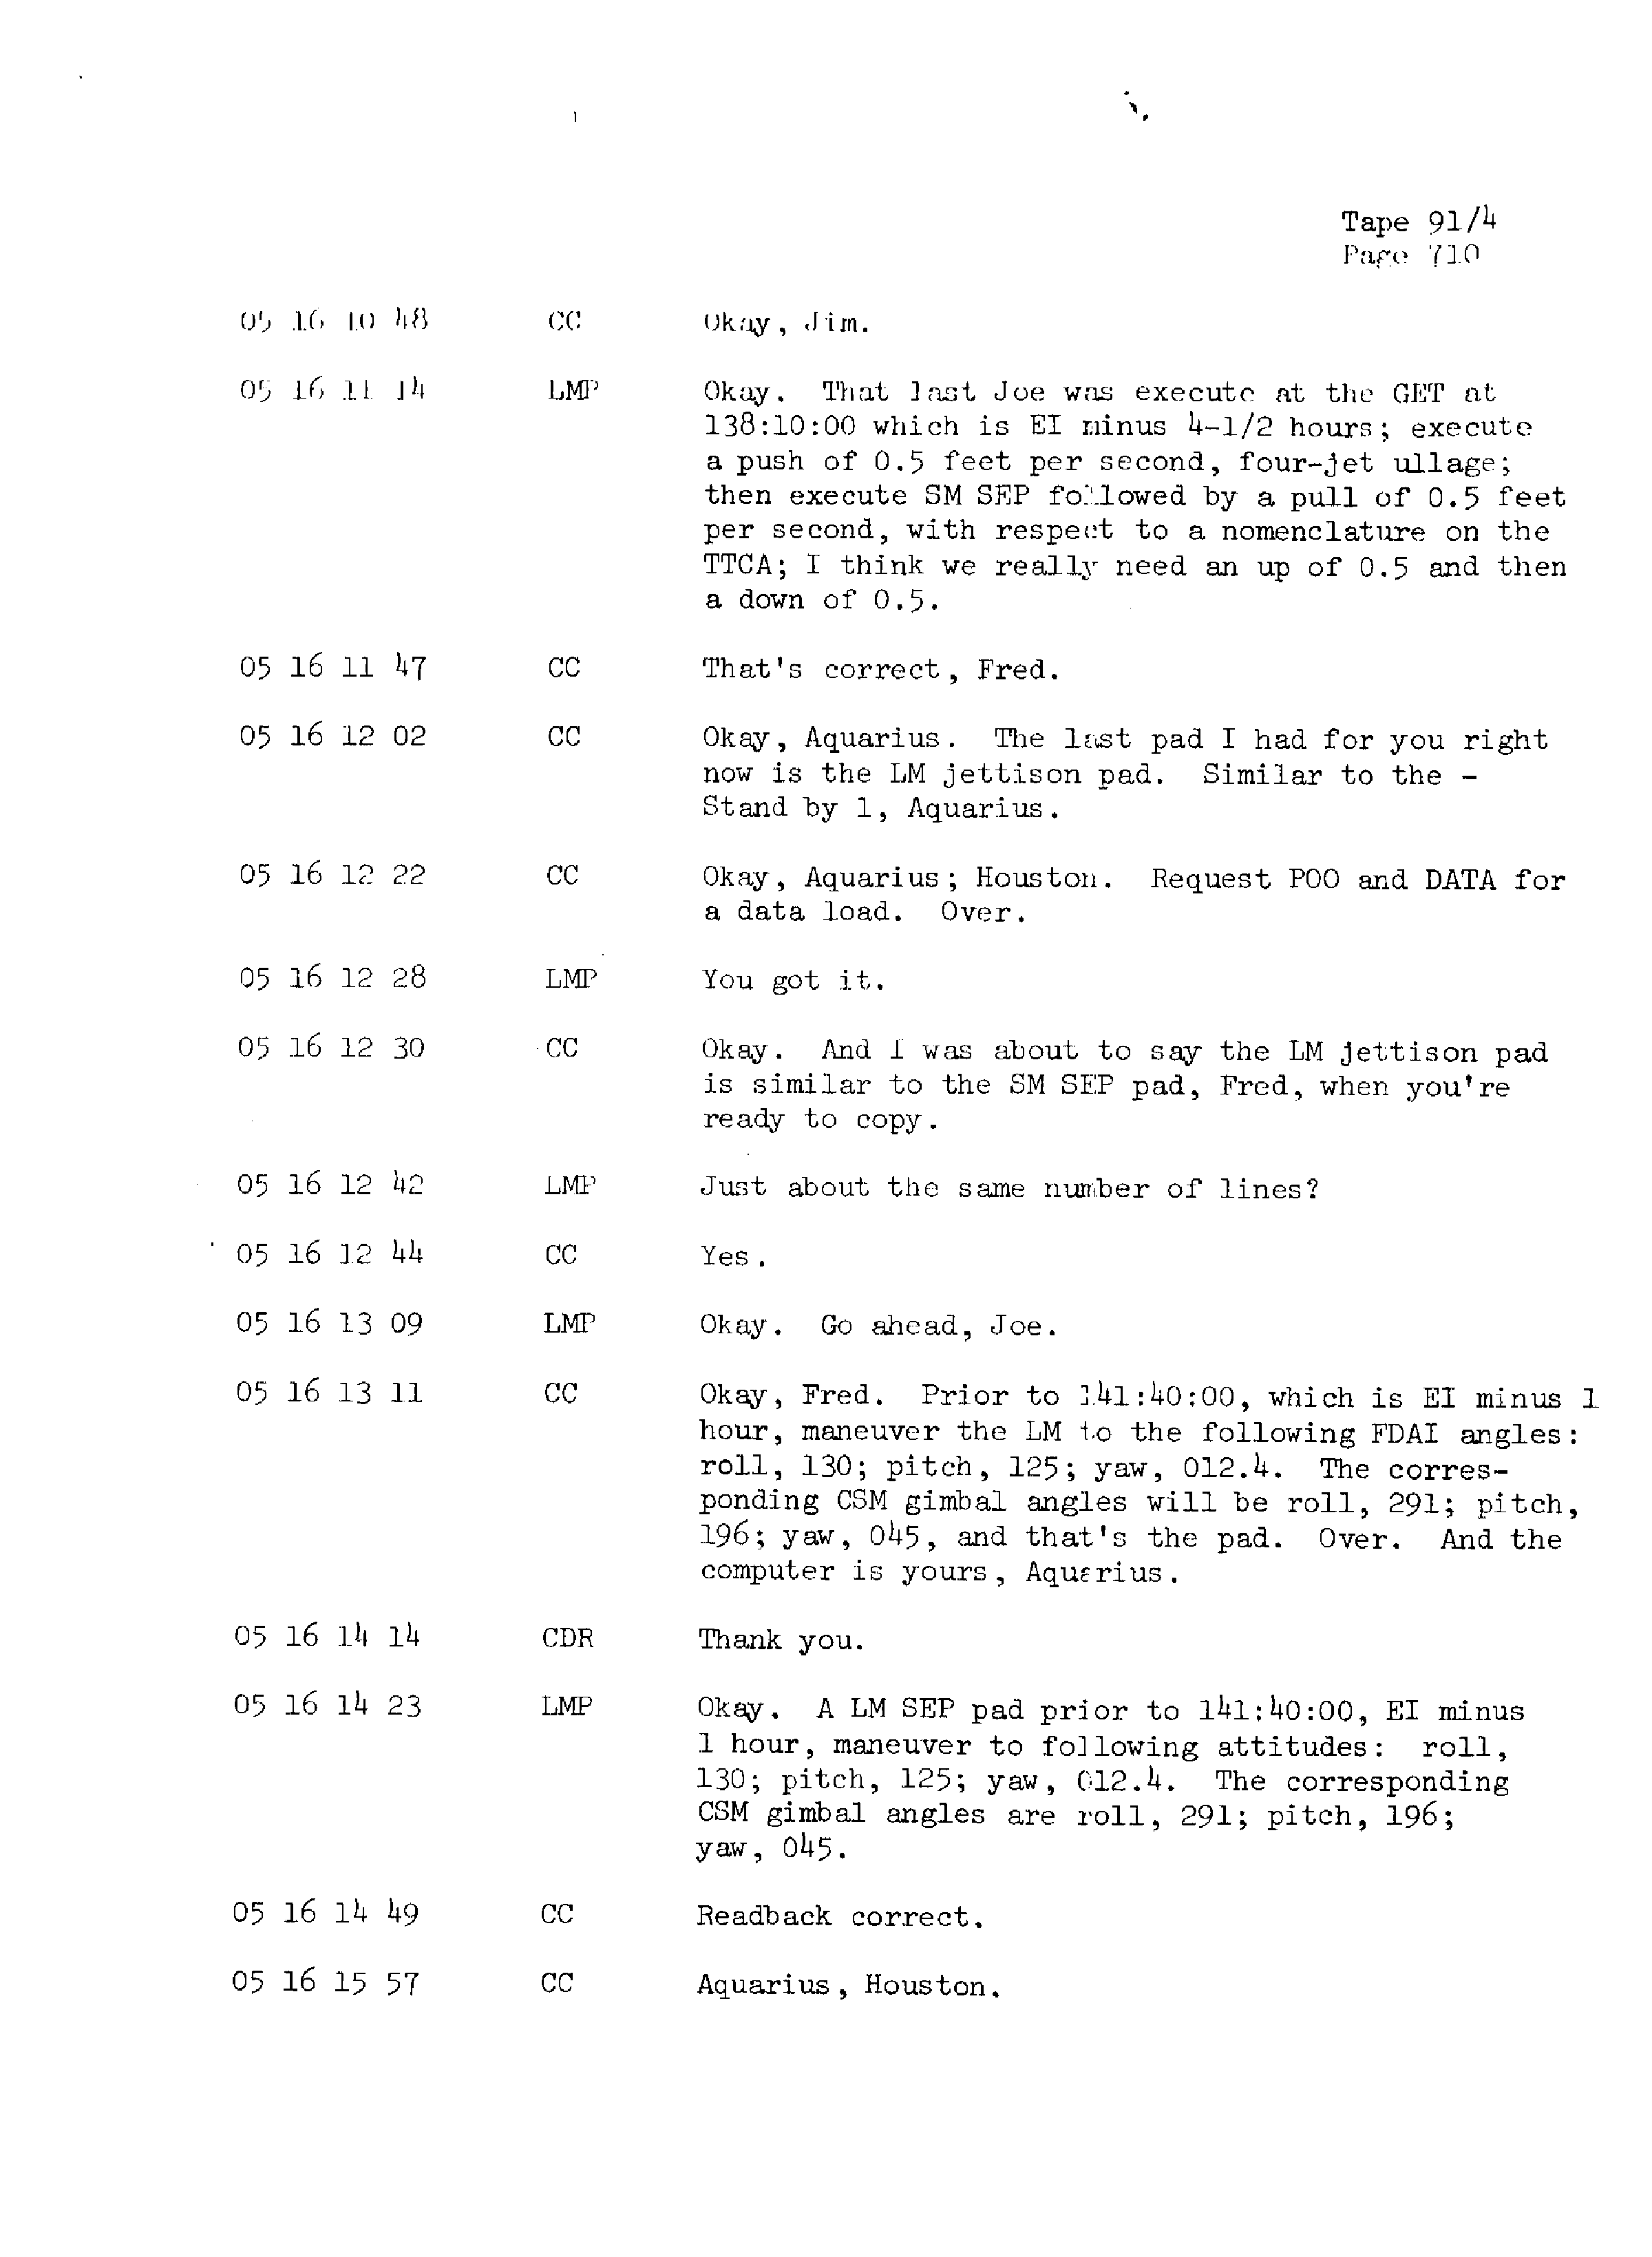 Page 717 of Apollo 13’s original transcript